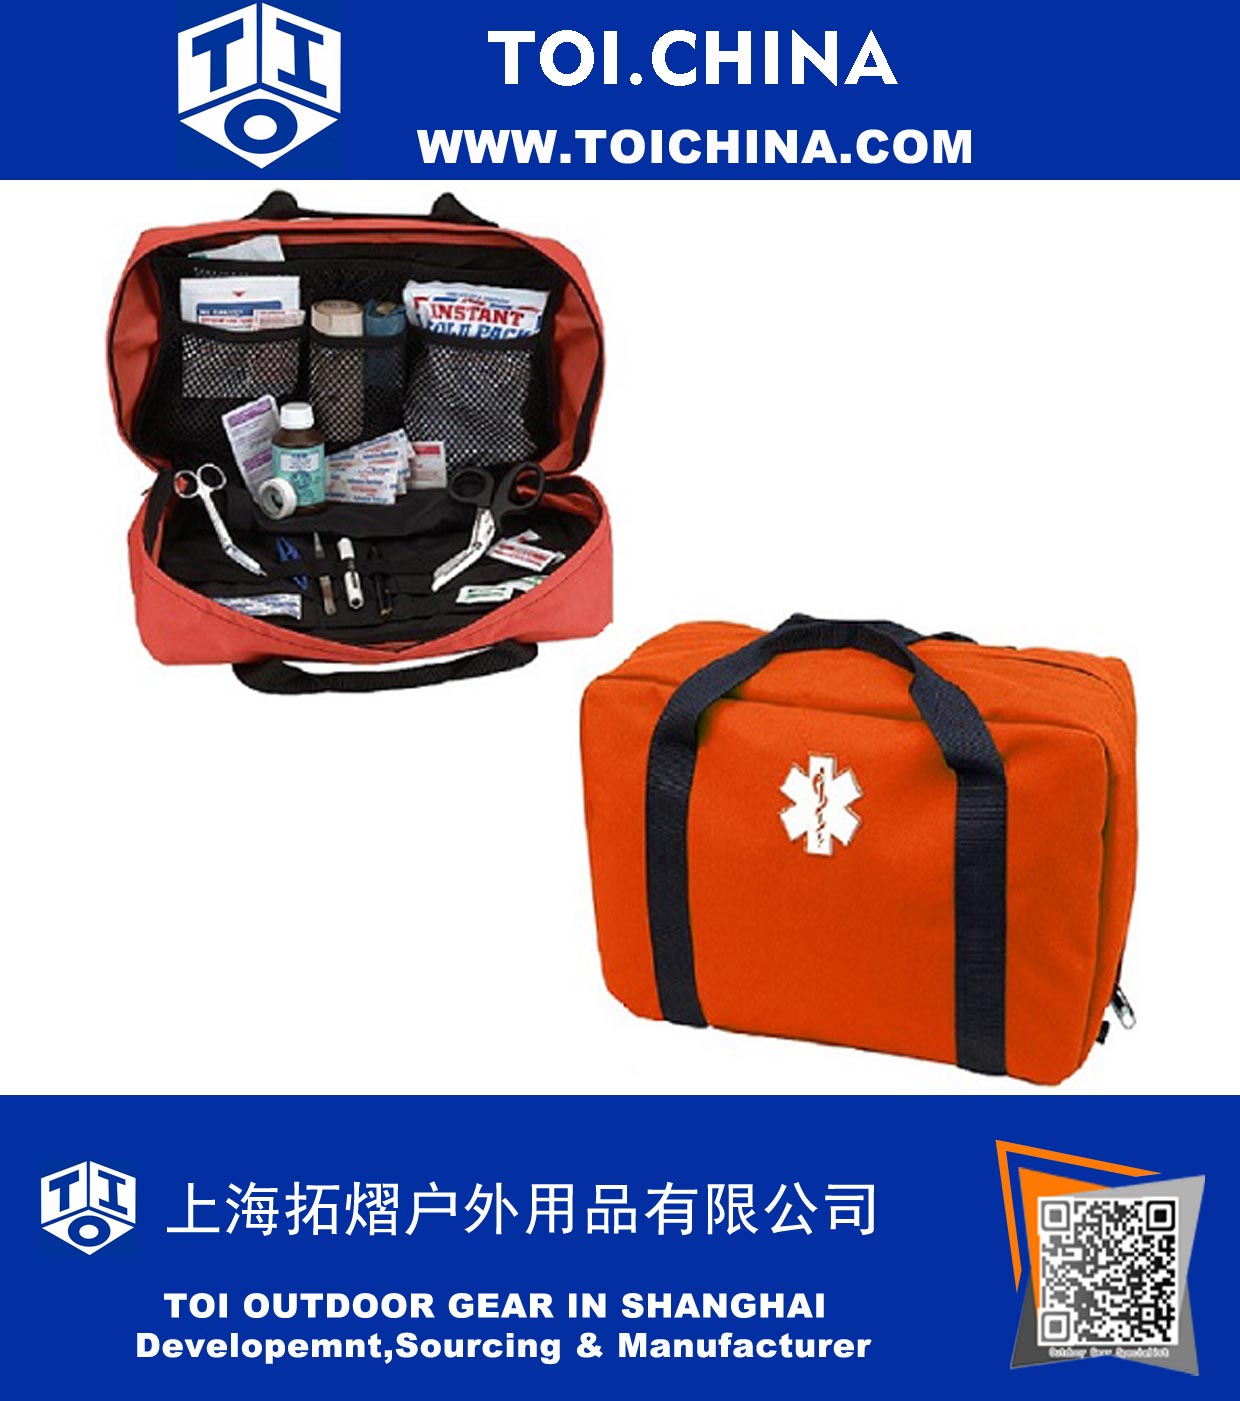 First Responder Bag EMS/EMT First Aid Bag Medical Emergency Rescue Shoulder Bag